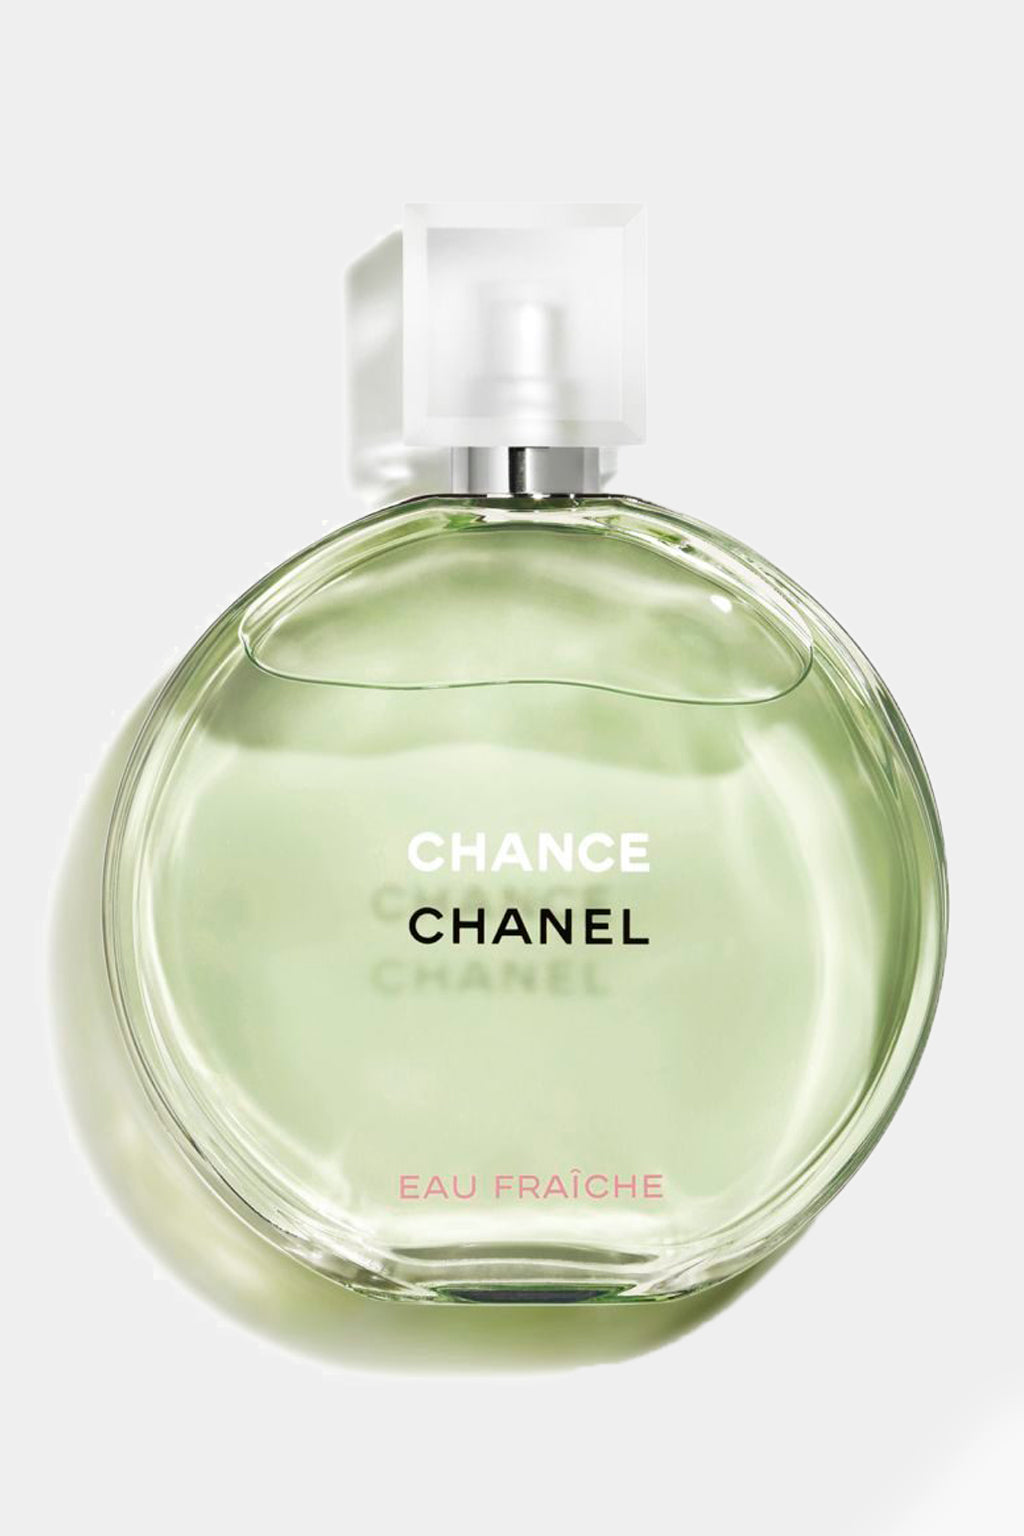 Chanel - Chance Eau Fraiche Edt 100ml